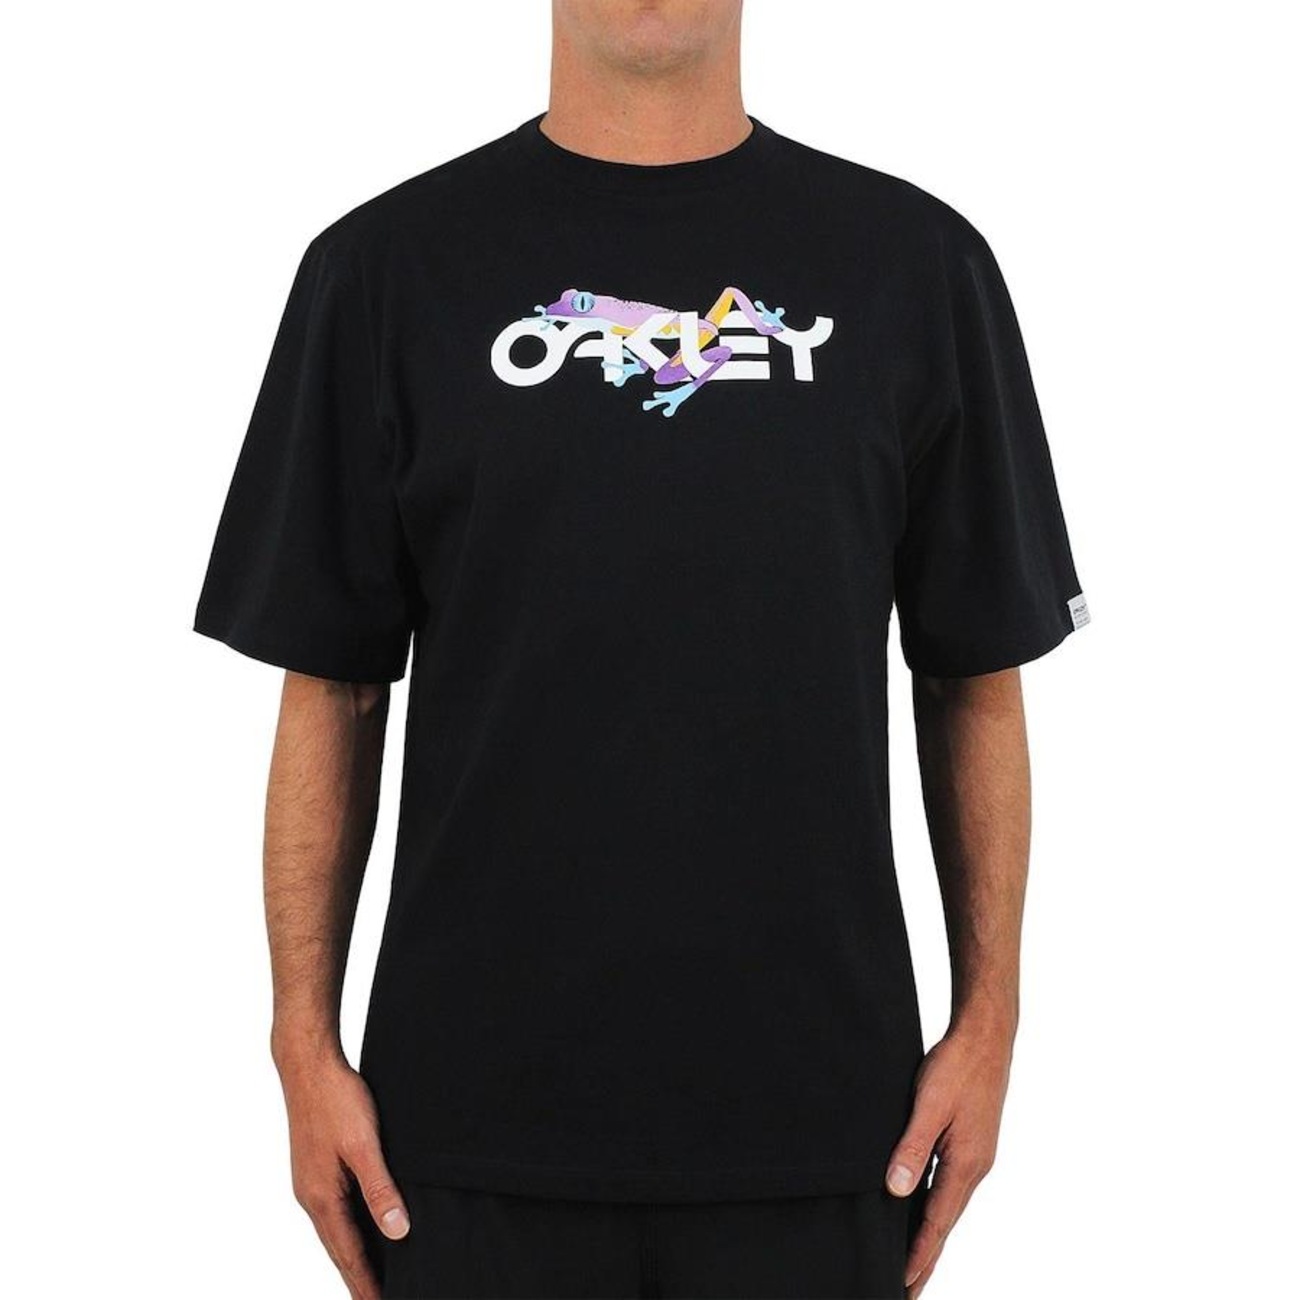 Oakley Camiseta De Manga Curta Ultra Frog B1B RC (Cinza) - JAPA MODAS